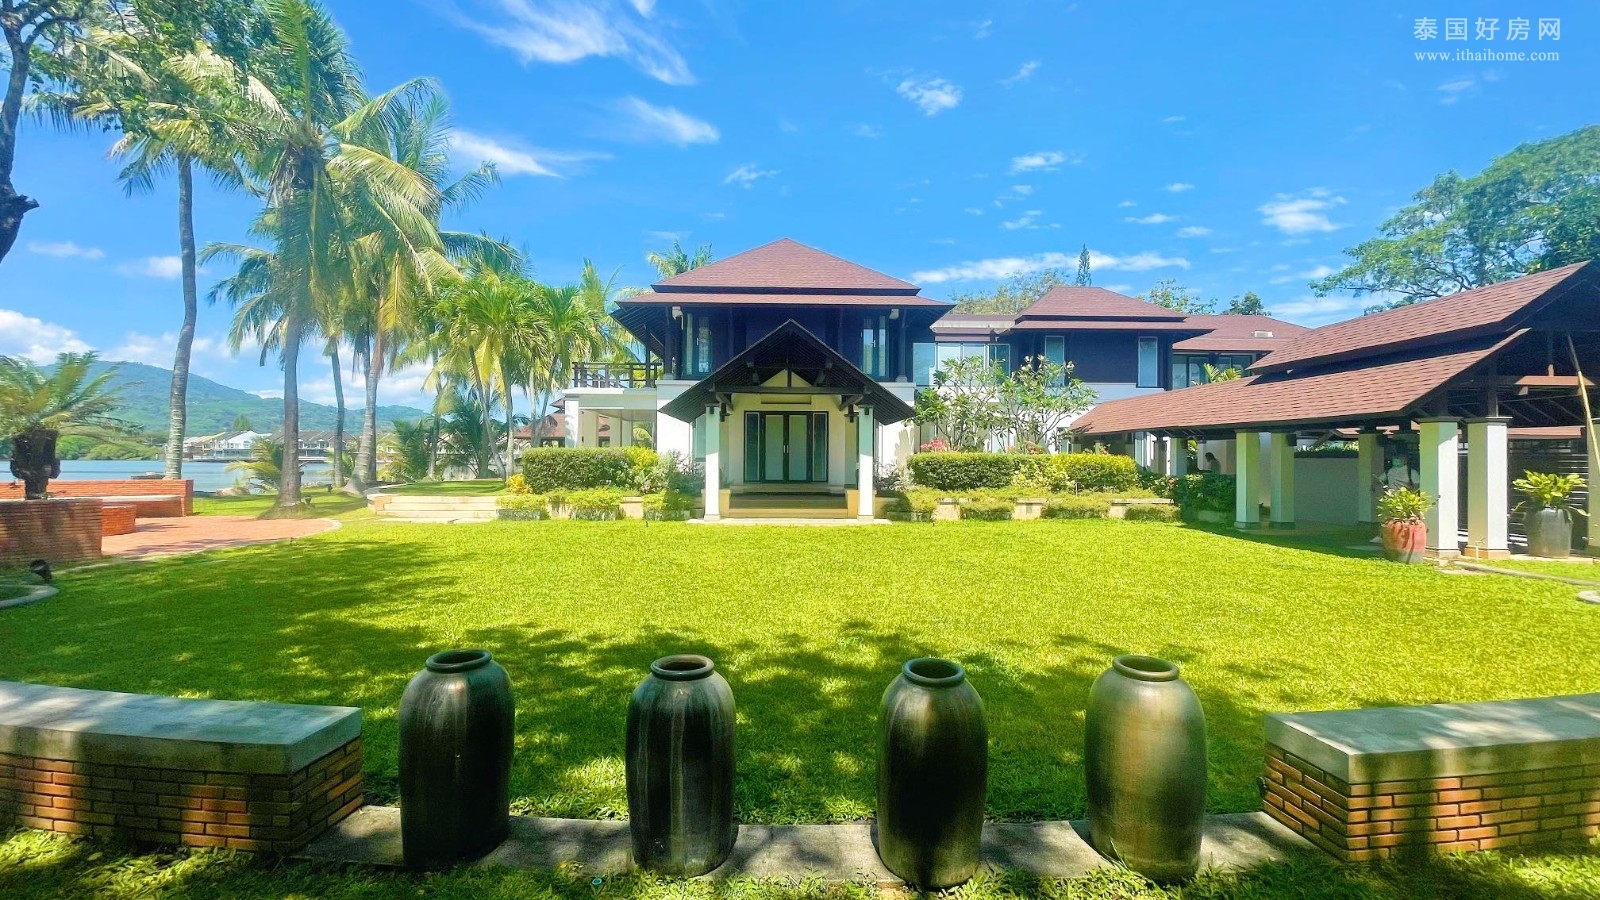 【推荐】泰国普吉岛查隆区4.5亩一线湖景泰式别墅出售 4卧3,000平米 售价5,500万泰铢 